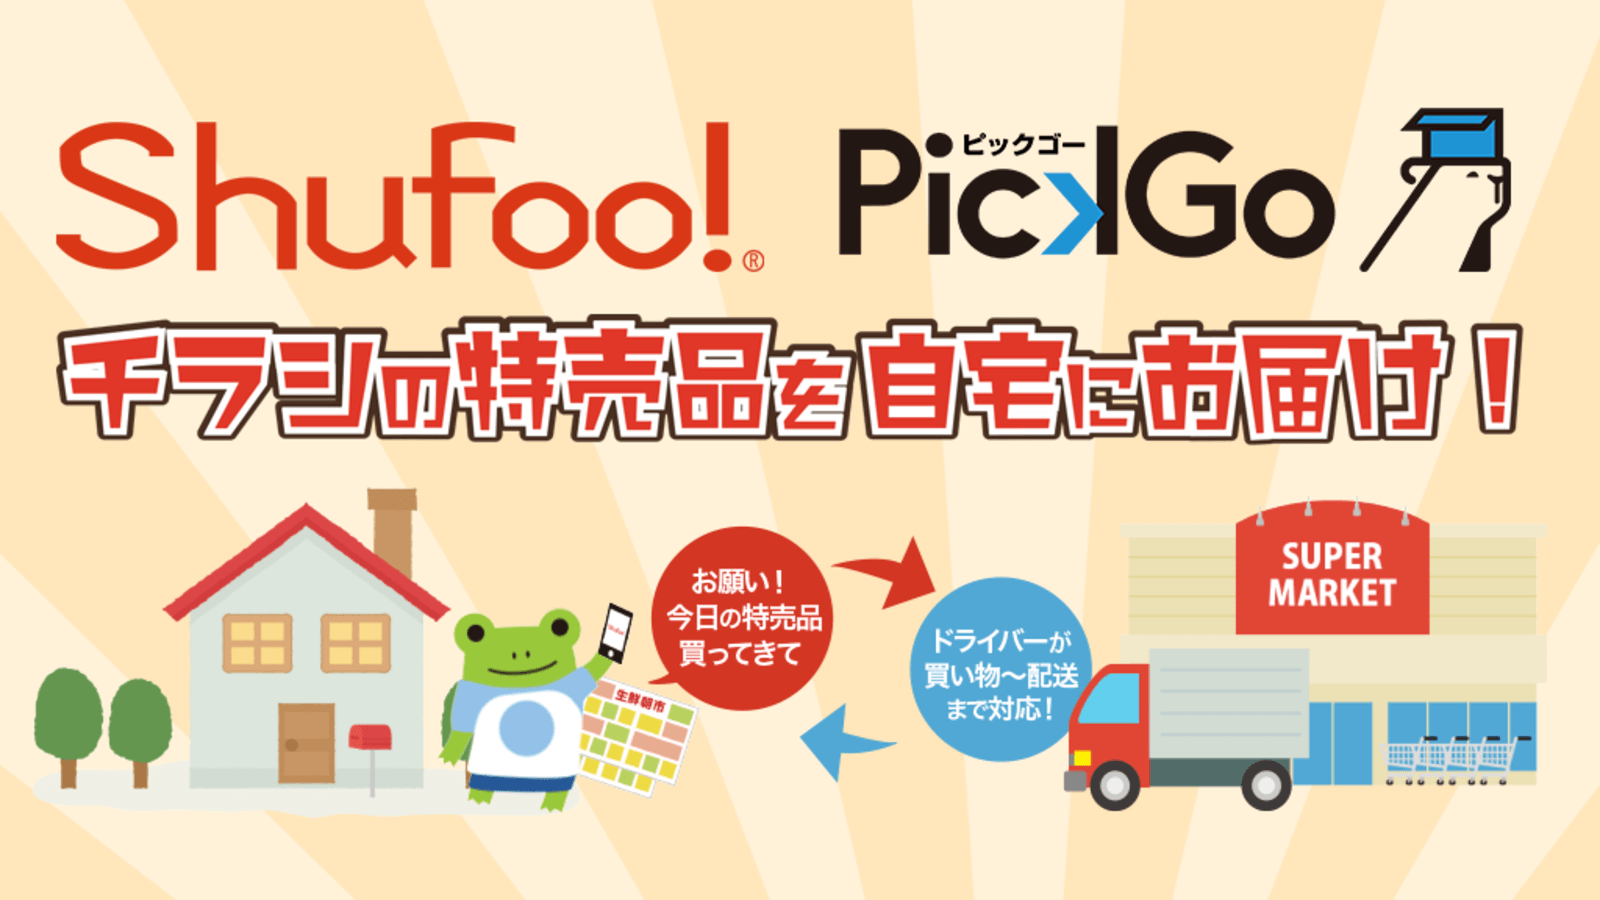 電子チラシ Shufoo 掲載商品の購買と配送を Pickgo買い物 に依頼するサービス開始 Web担当者forum